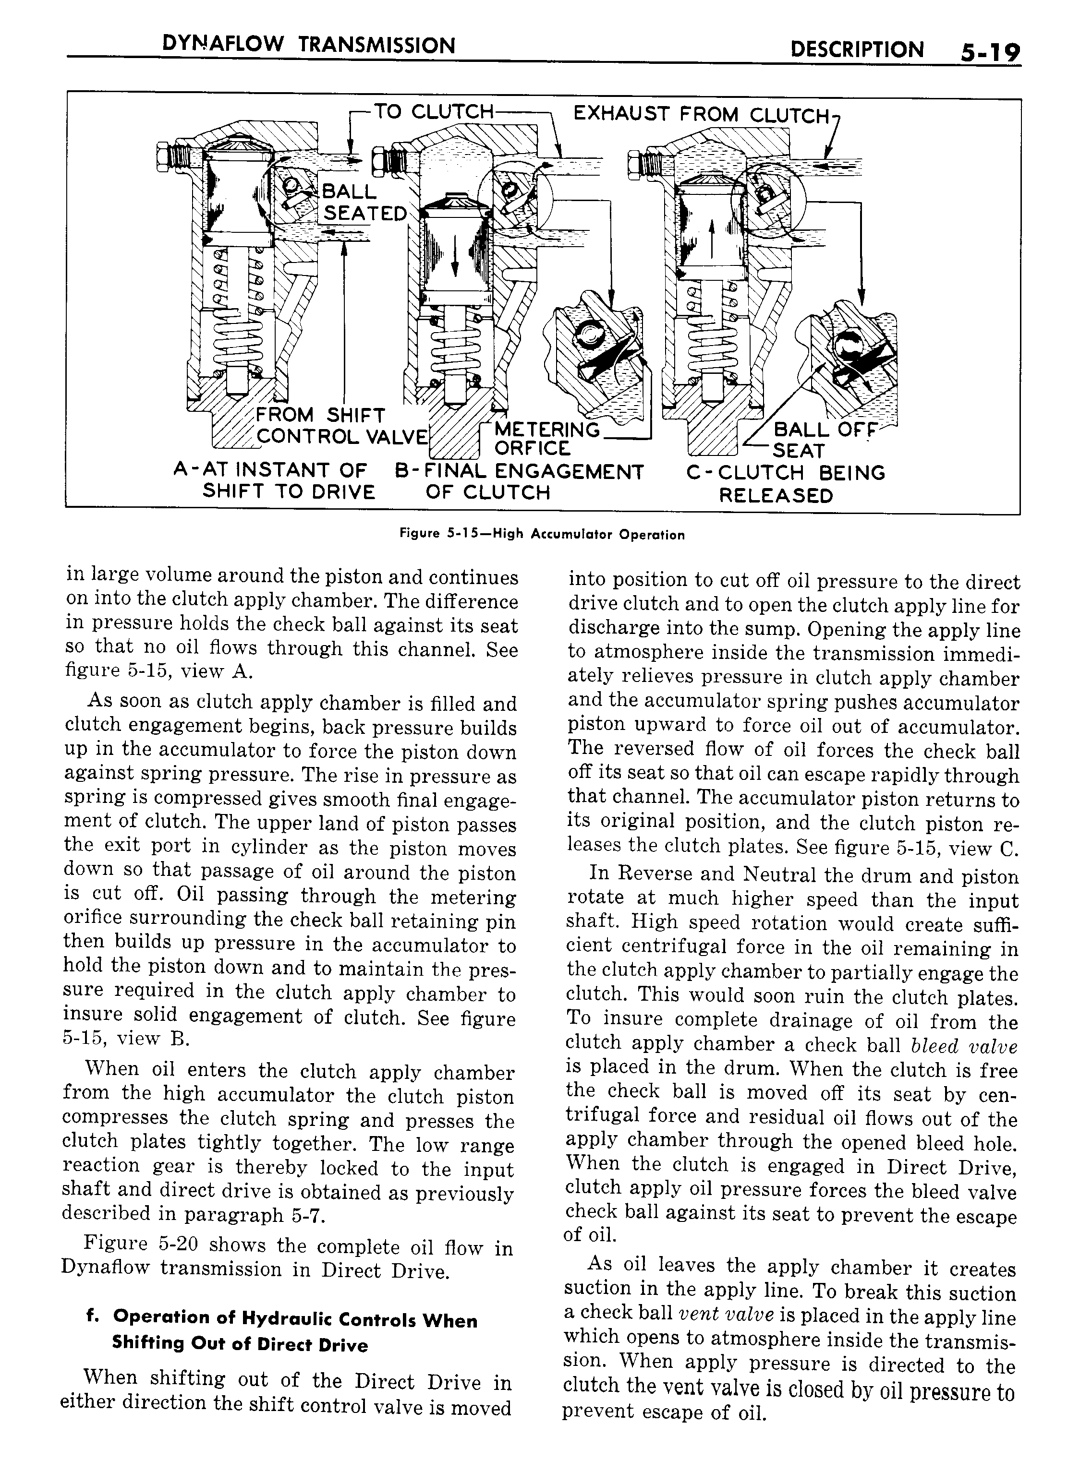 n_06 1957 Buick Shop Manual - Dynaflow-019-019.jpg